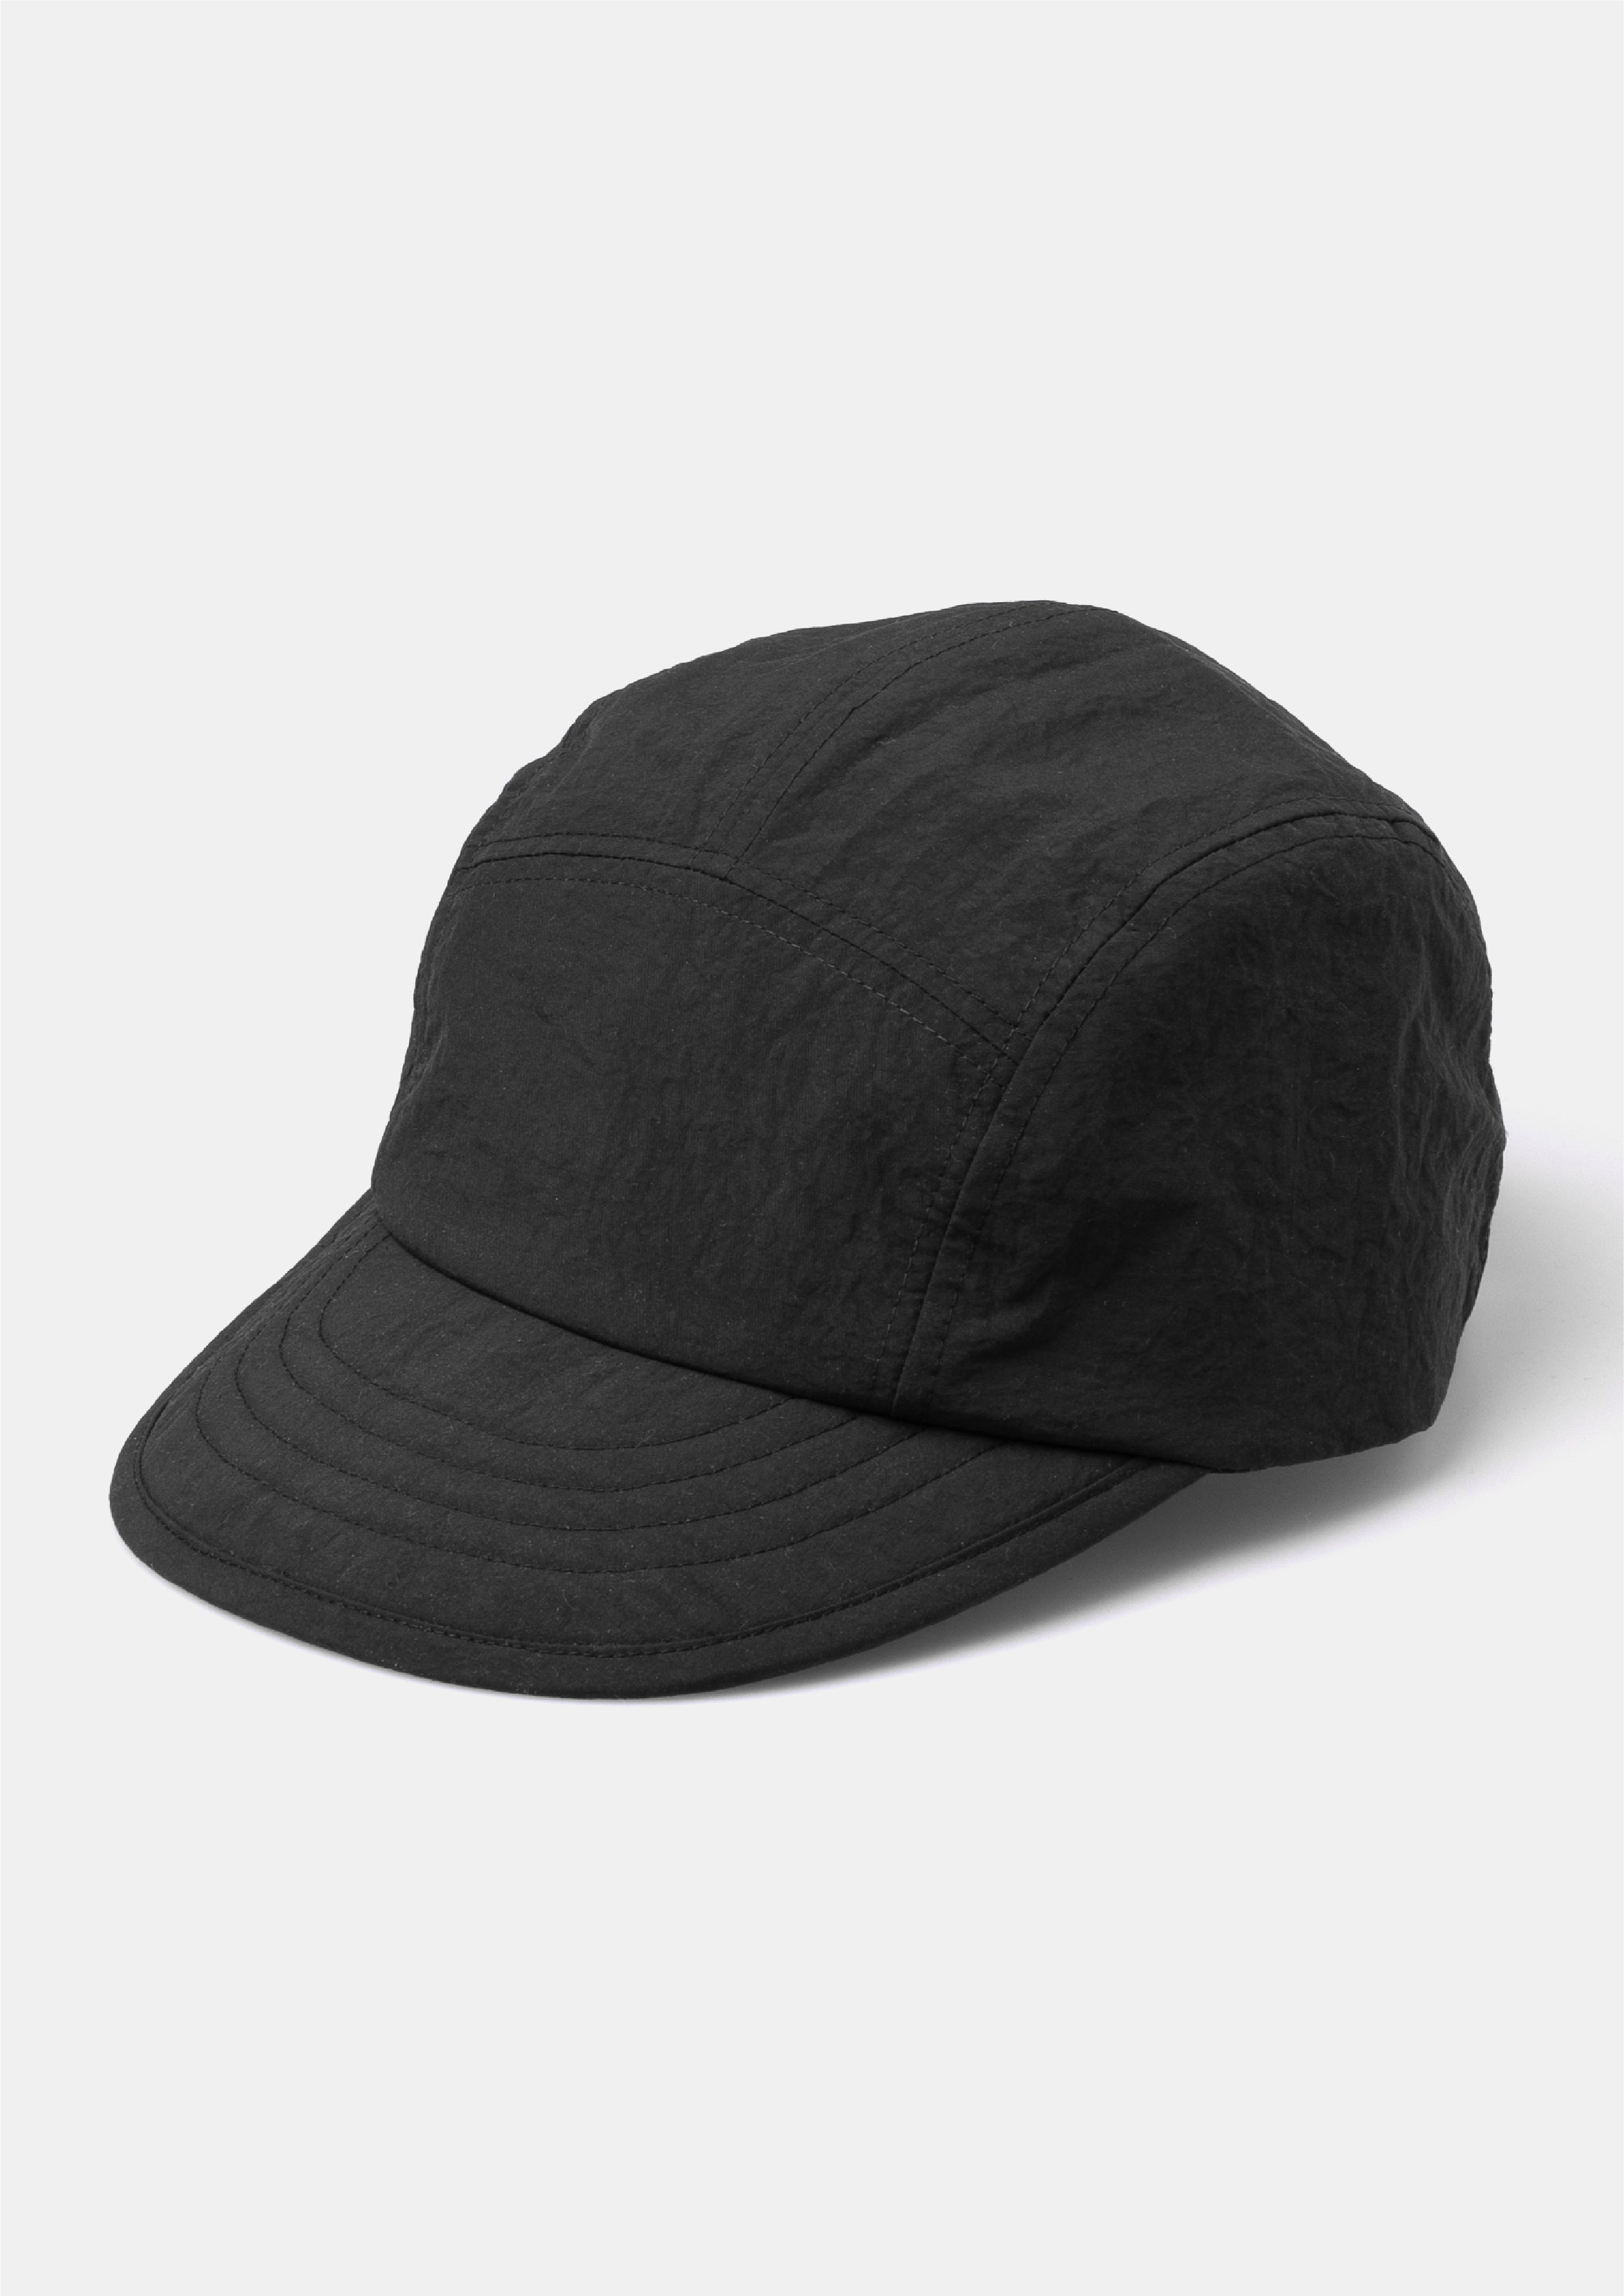 SAILOR BLK セーラーハット - 帽子